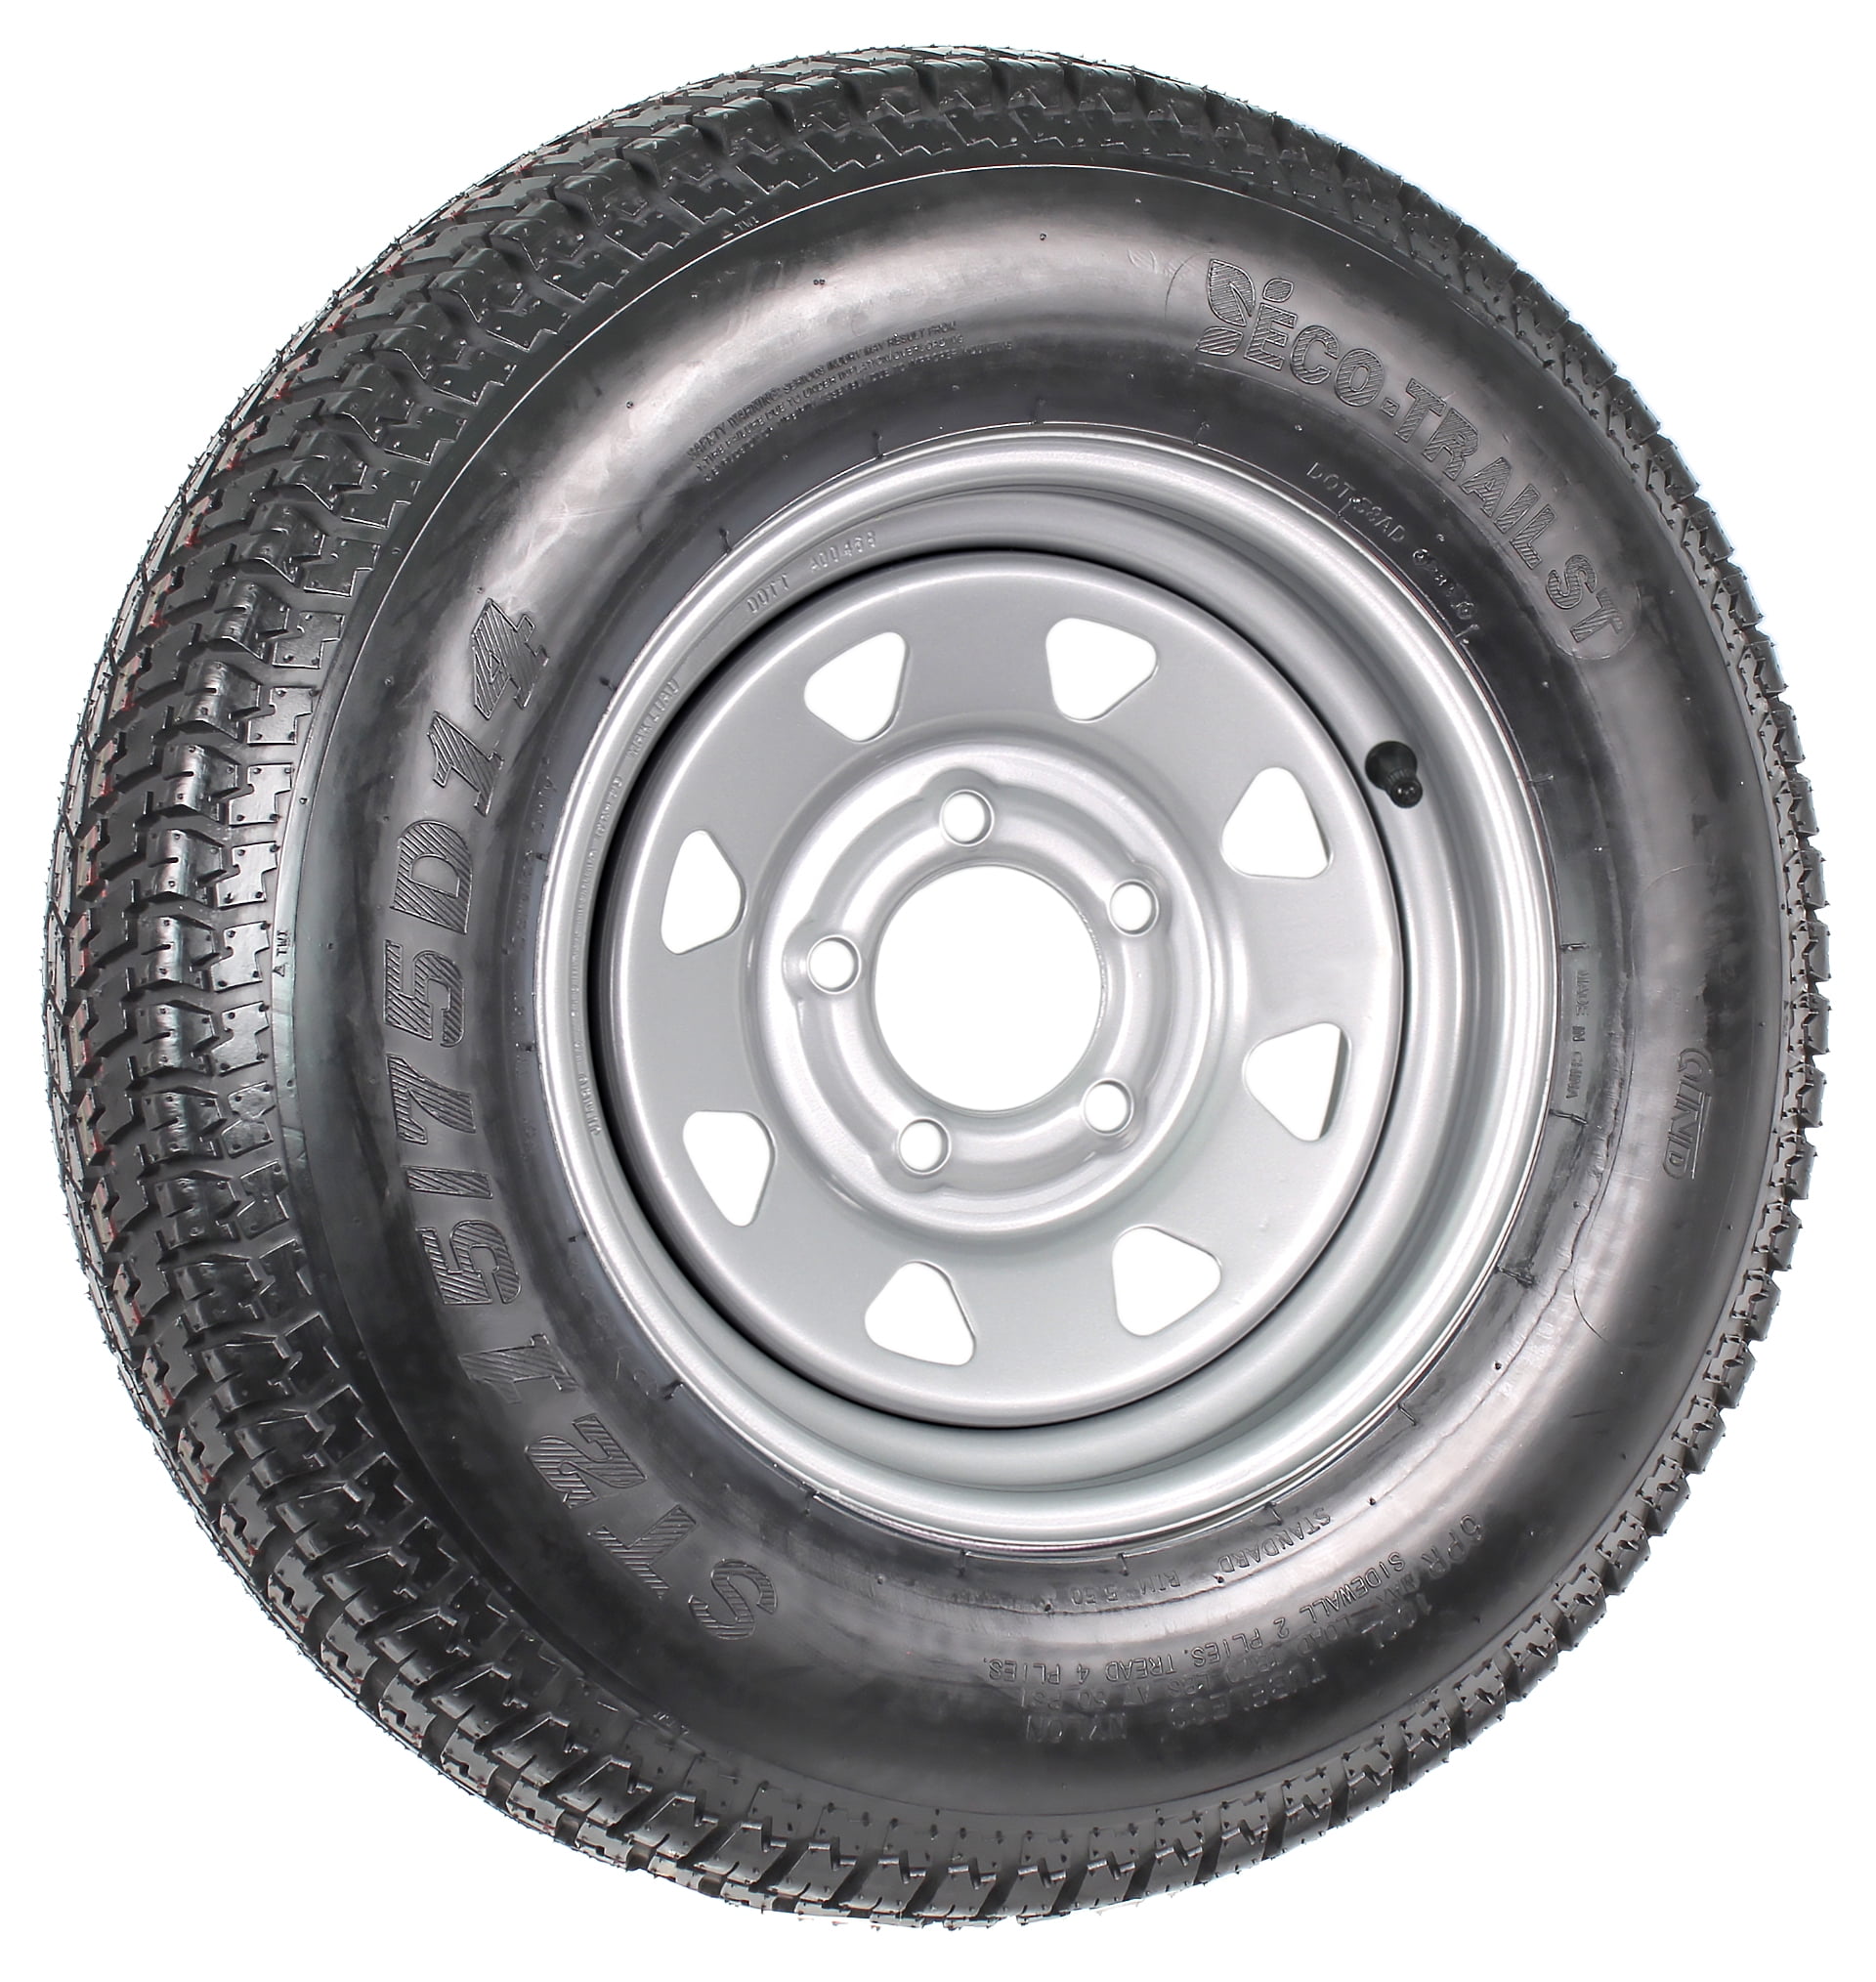 Trailer Tire and Rim Bias Ply ST205/75D14 LRC 14X5.5 5-4.5 Black Spoke Wheel 